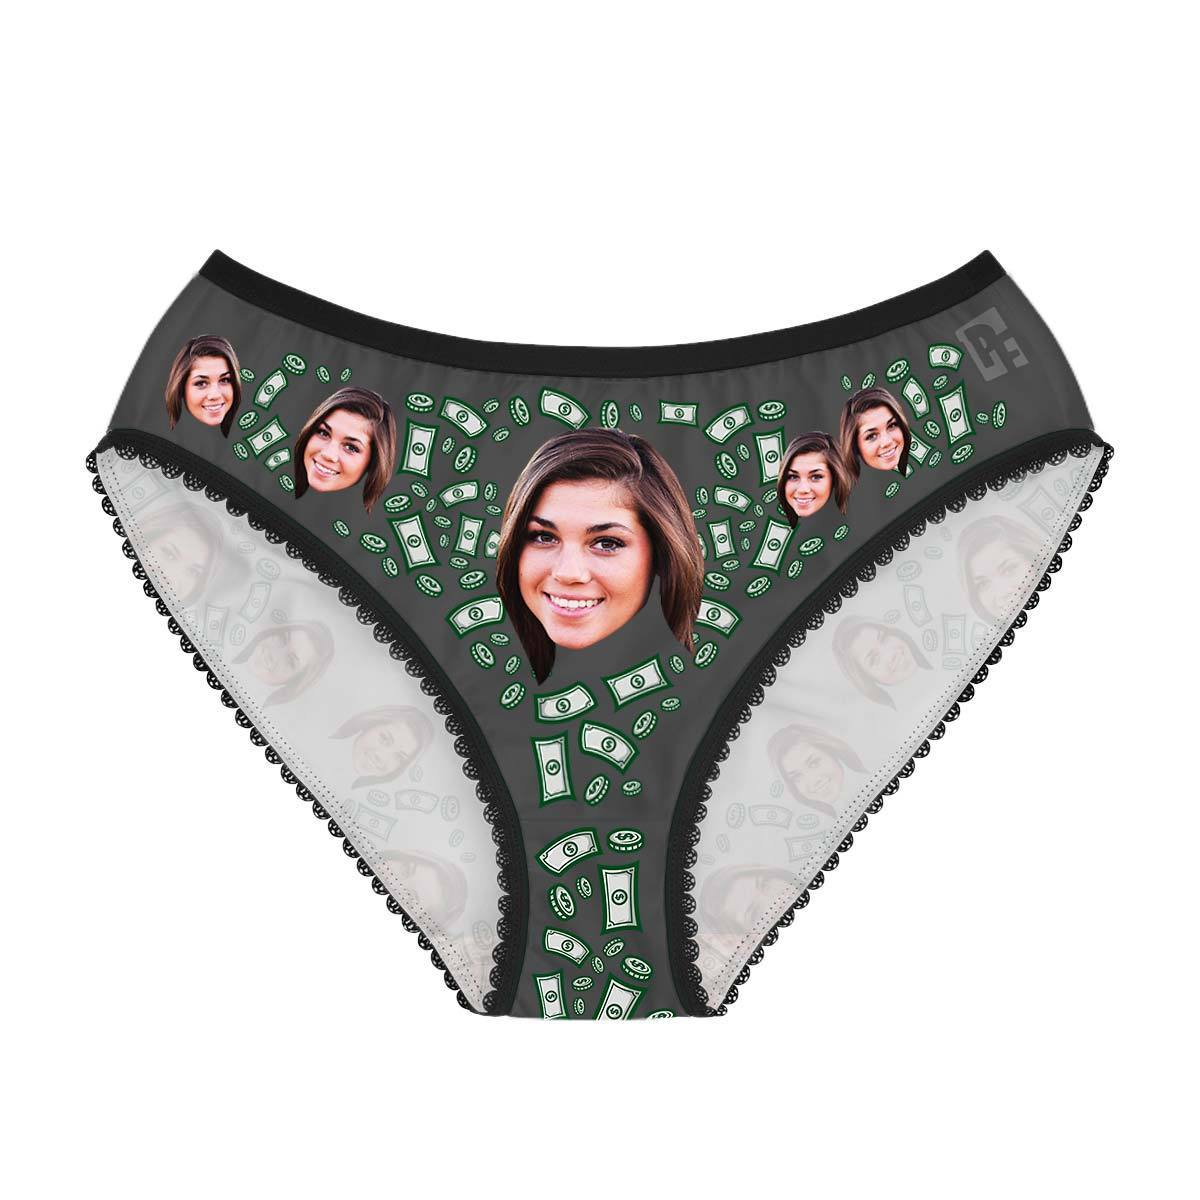 Dark Money women's underwear briefs personalized with photo printed on them